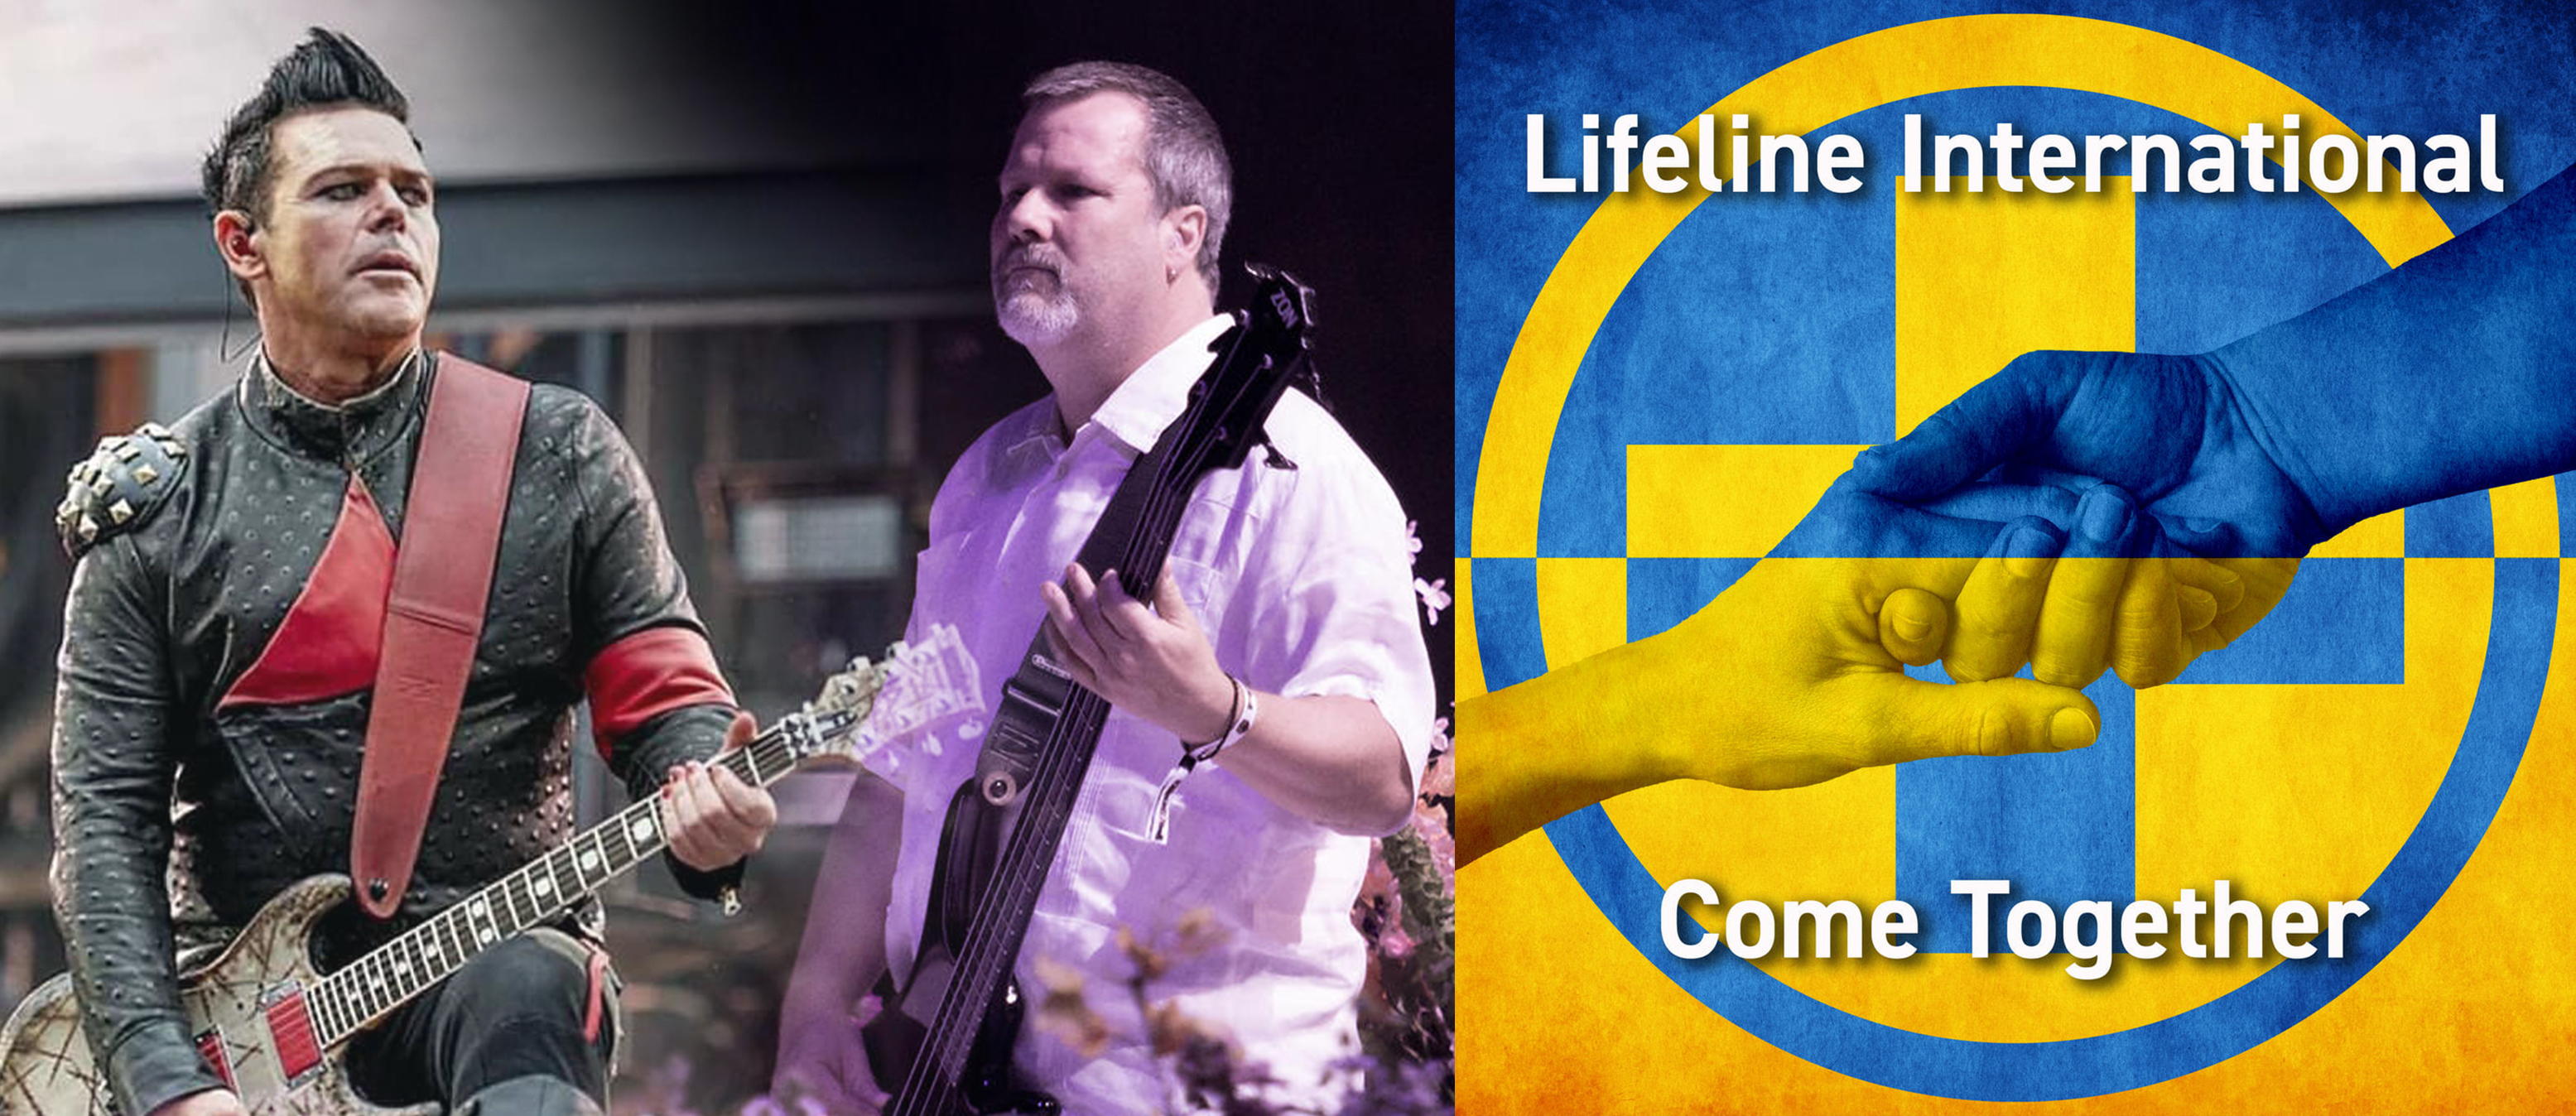 Richard Z Kruspe guitarrista de Rammstein y el basjista de Faith No more Bill Gould graban cover de Come Togheter (The beatles) en apoyo a Ucrania.